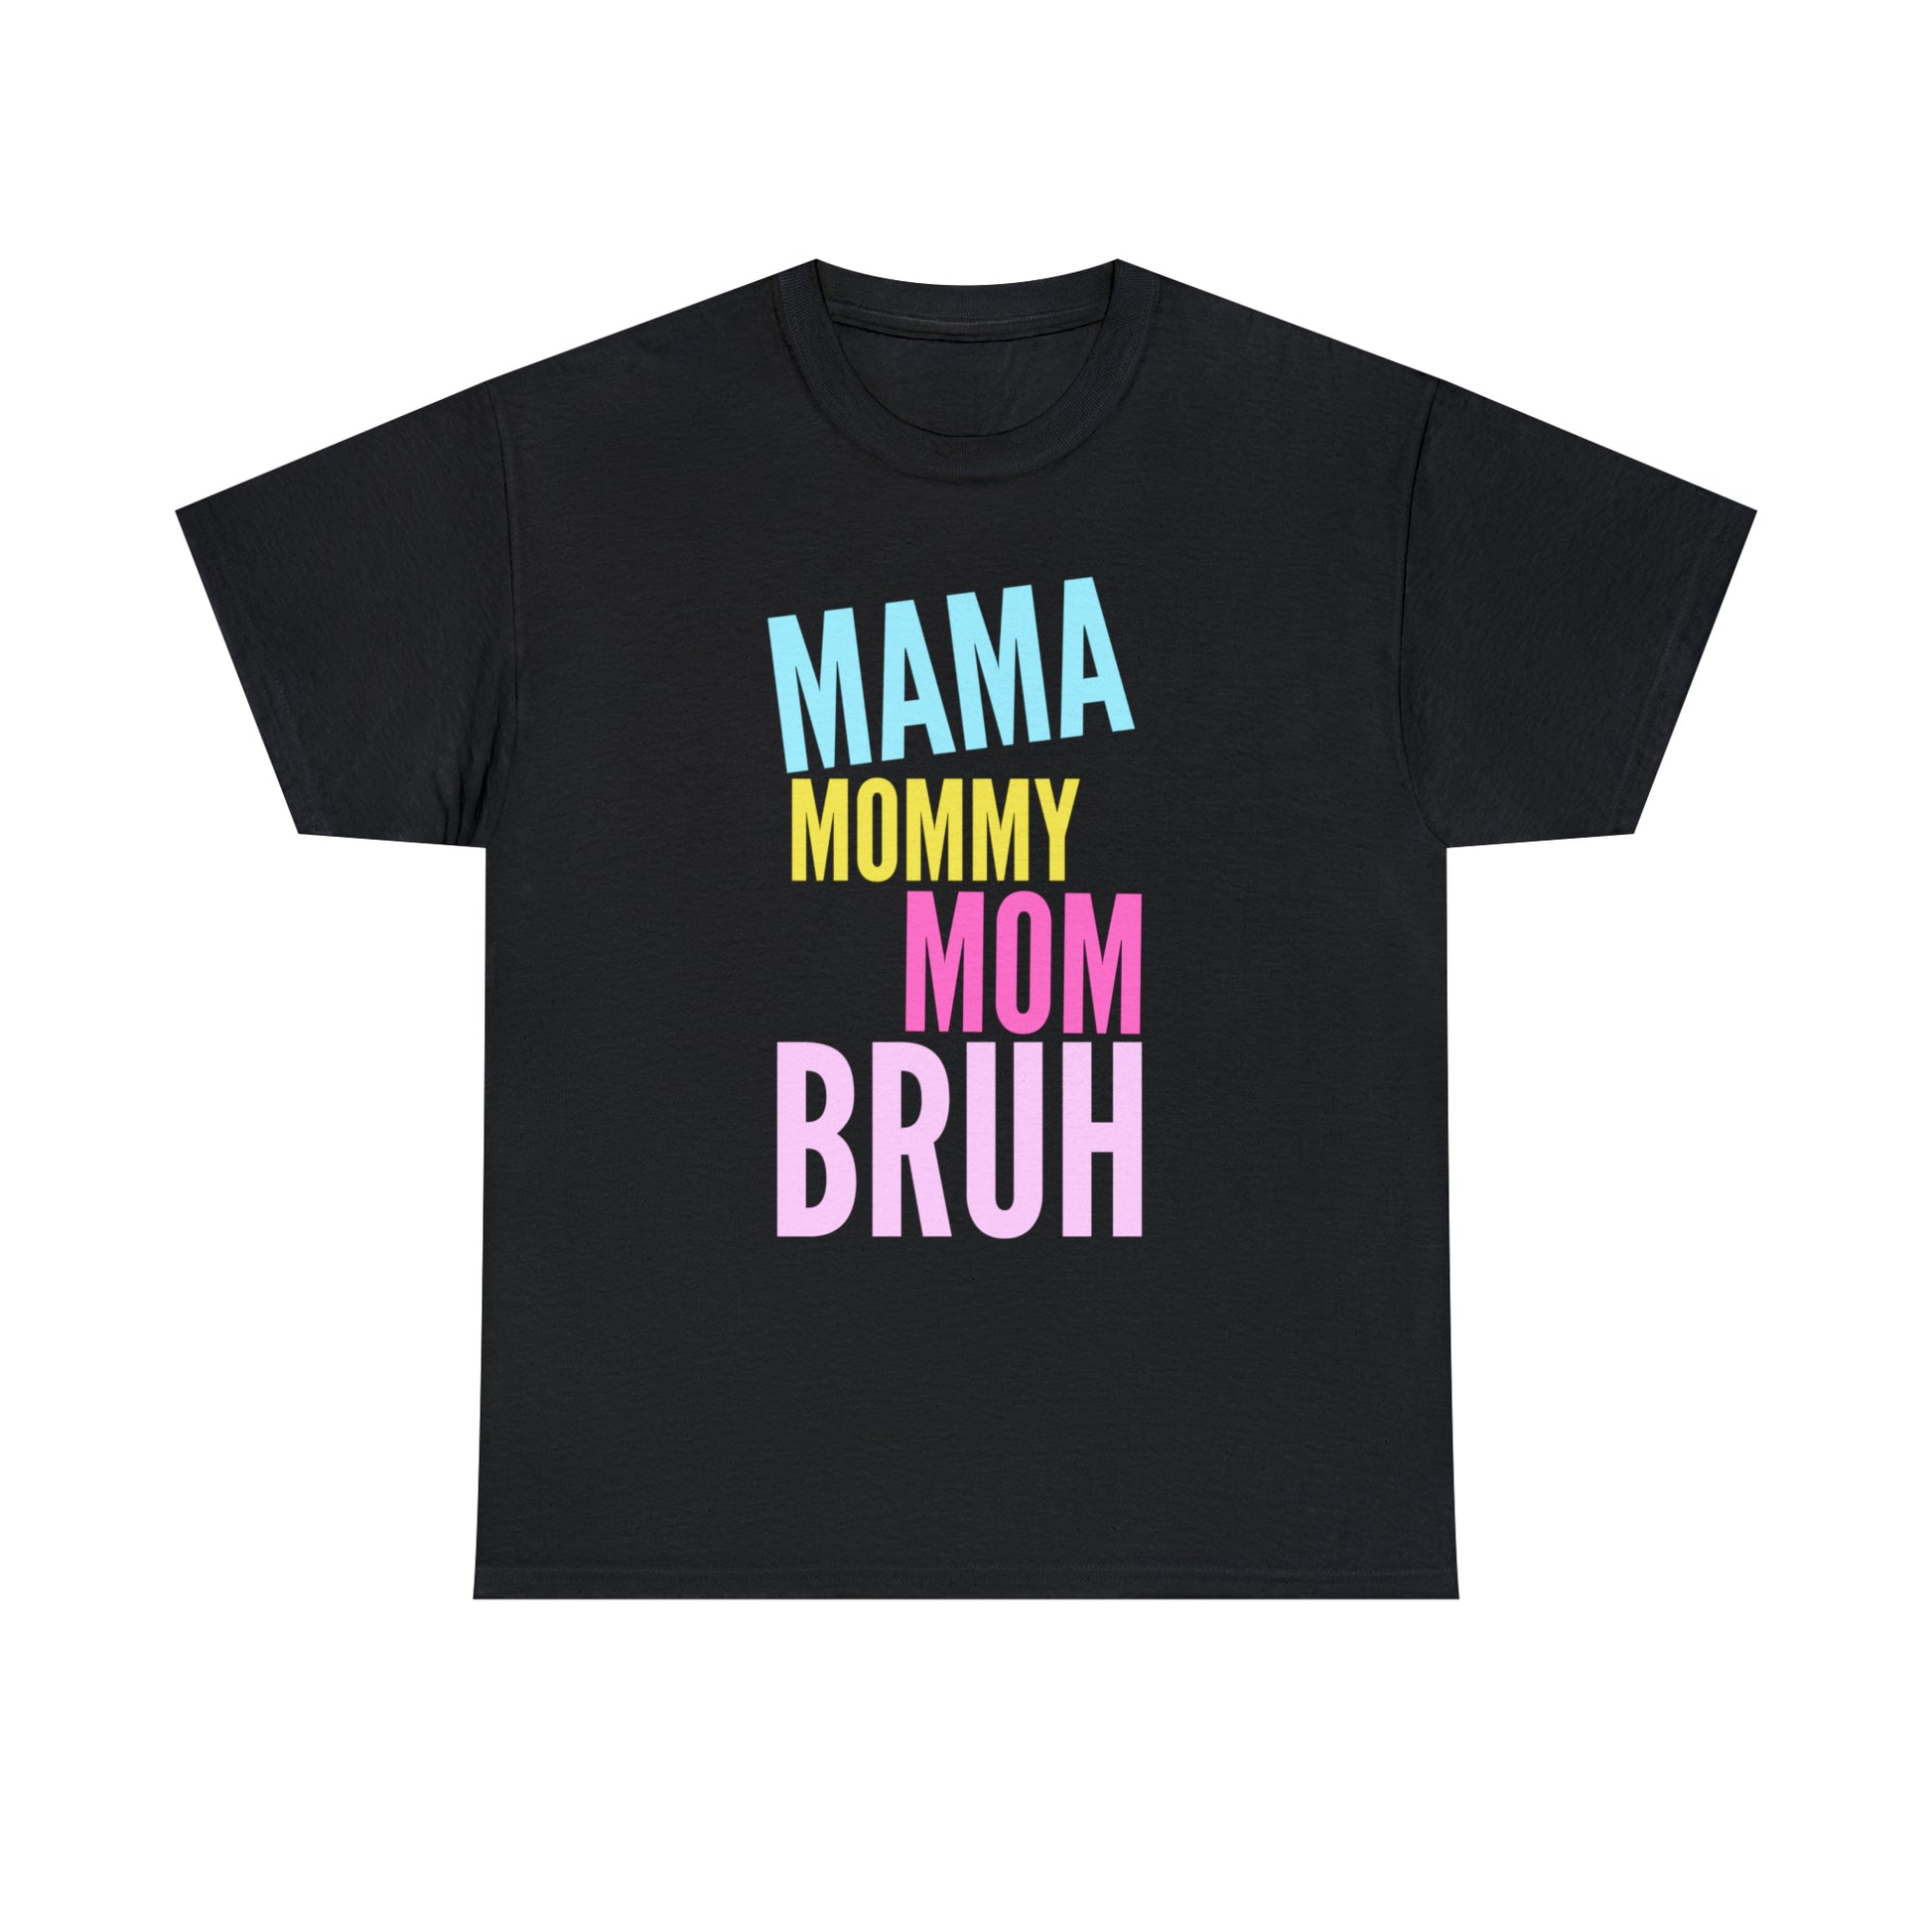 Motherhood fashion statement